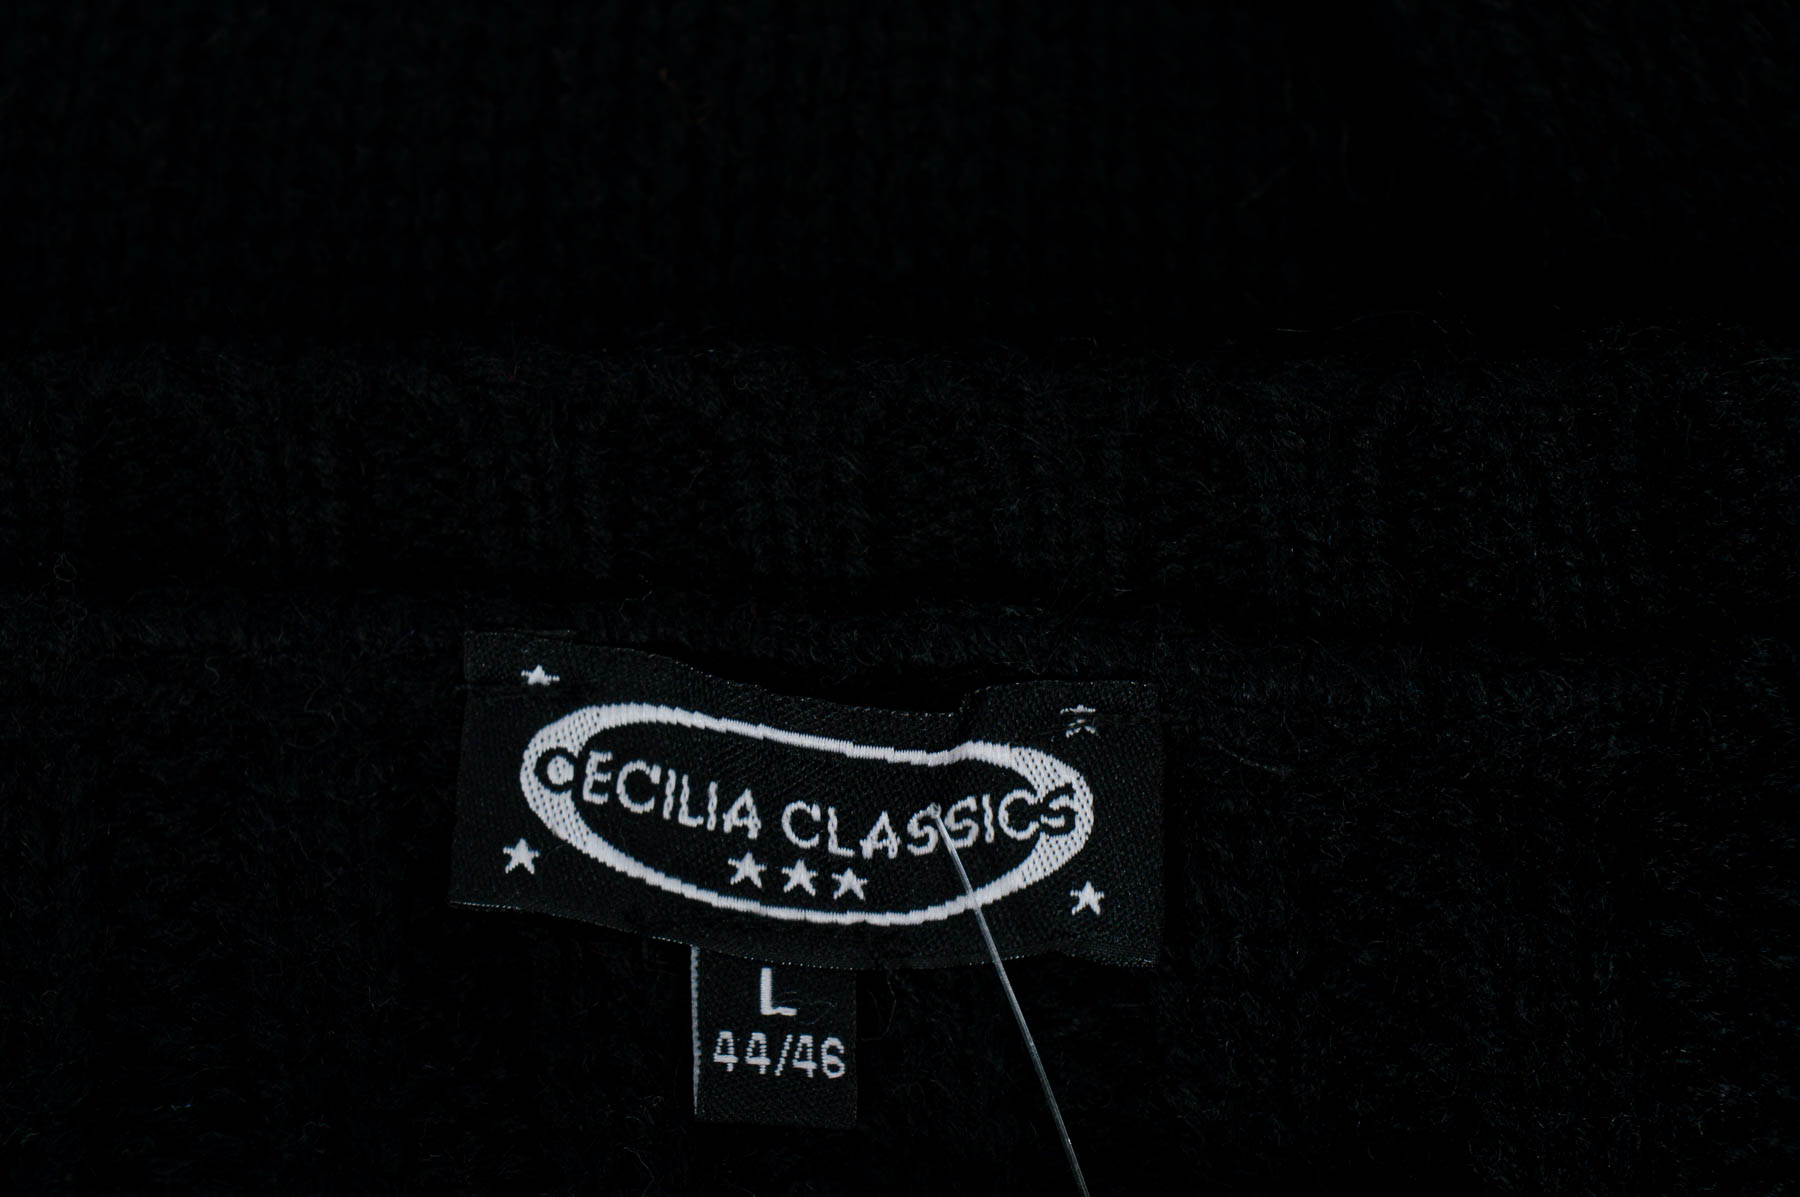 Rochiа - Cecilia Classics - 2